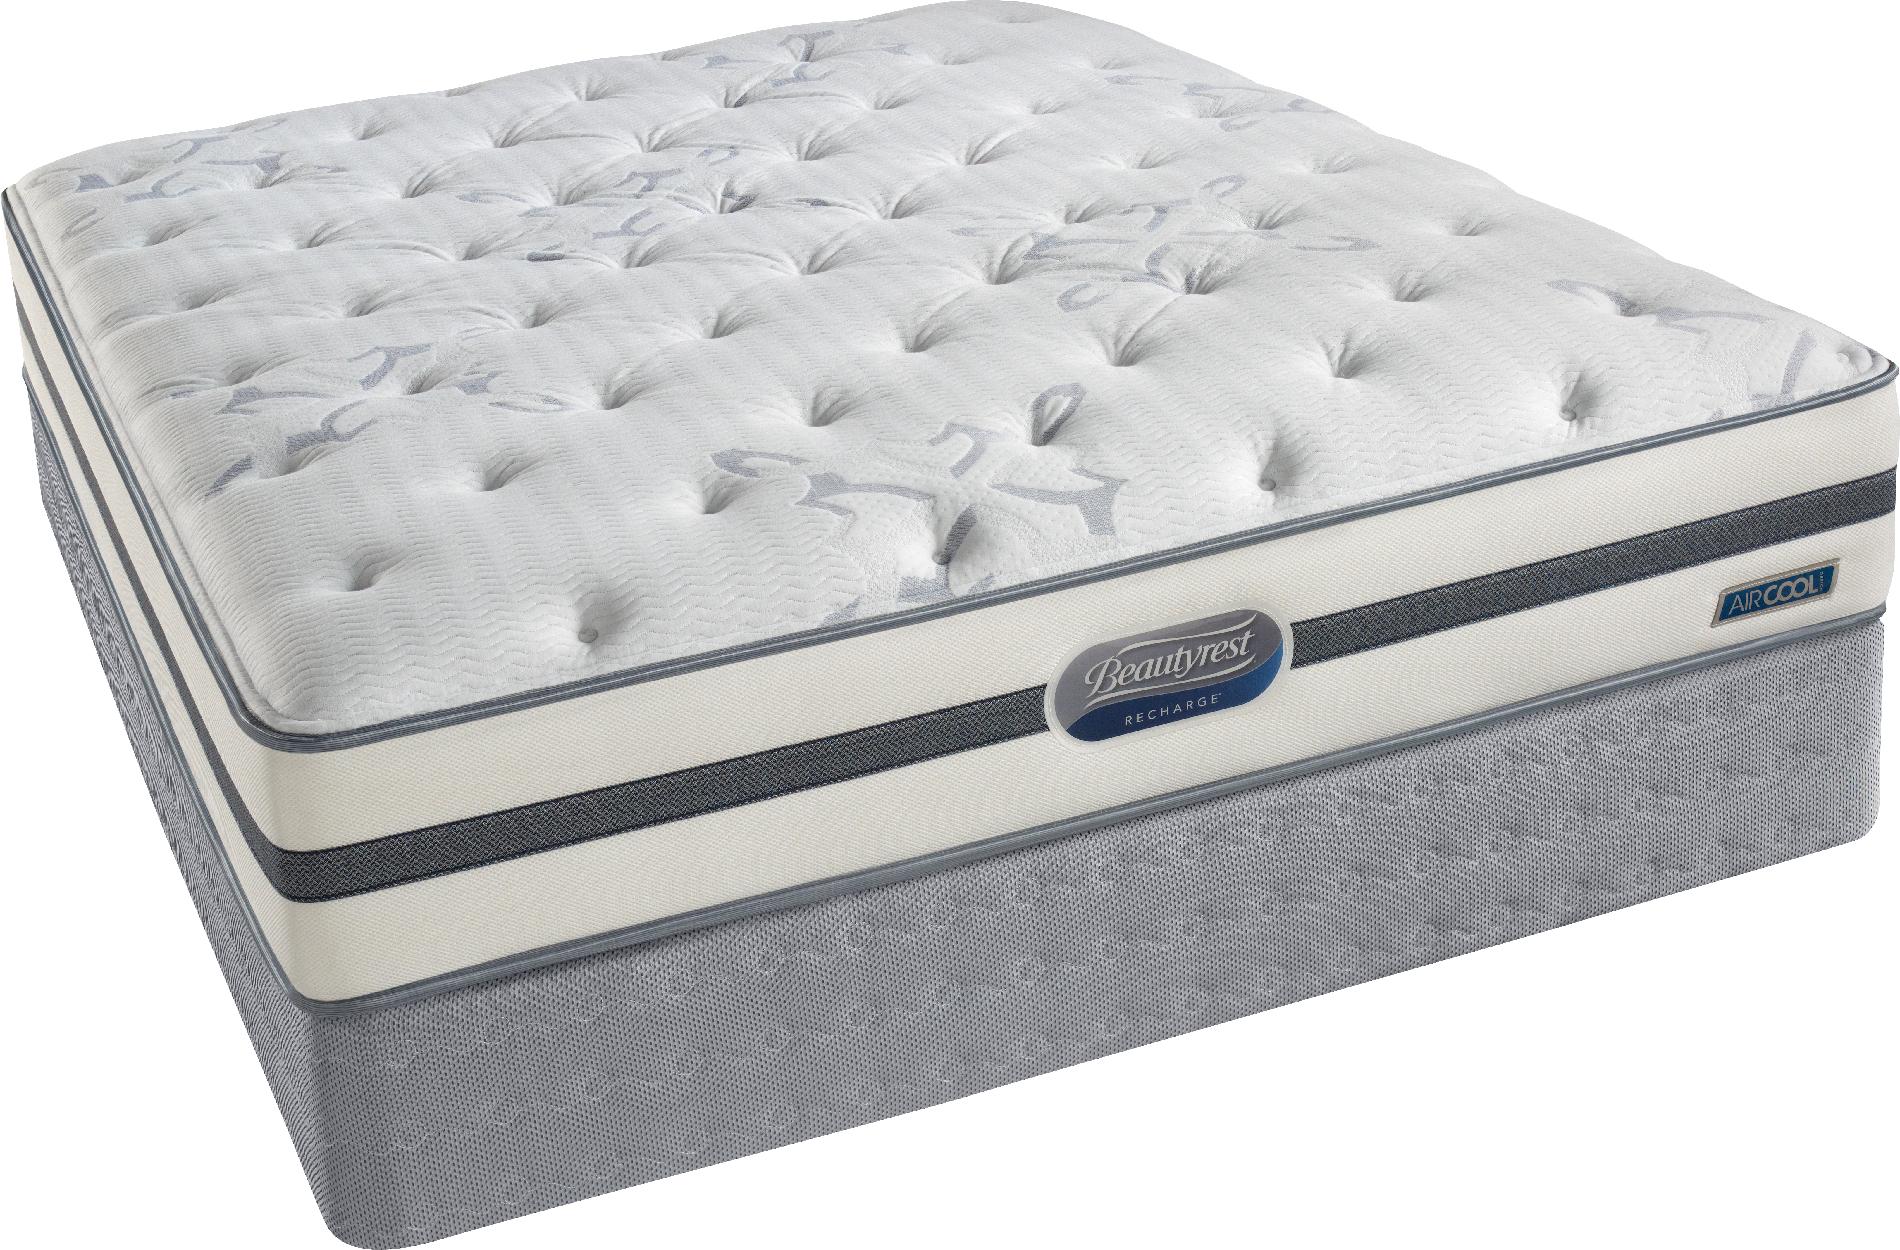 sears.com air mattress